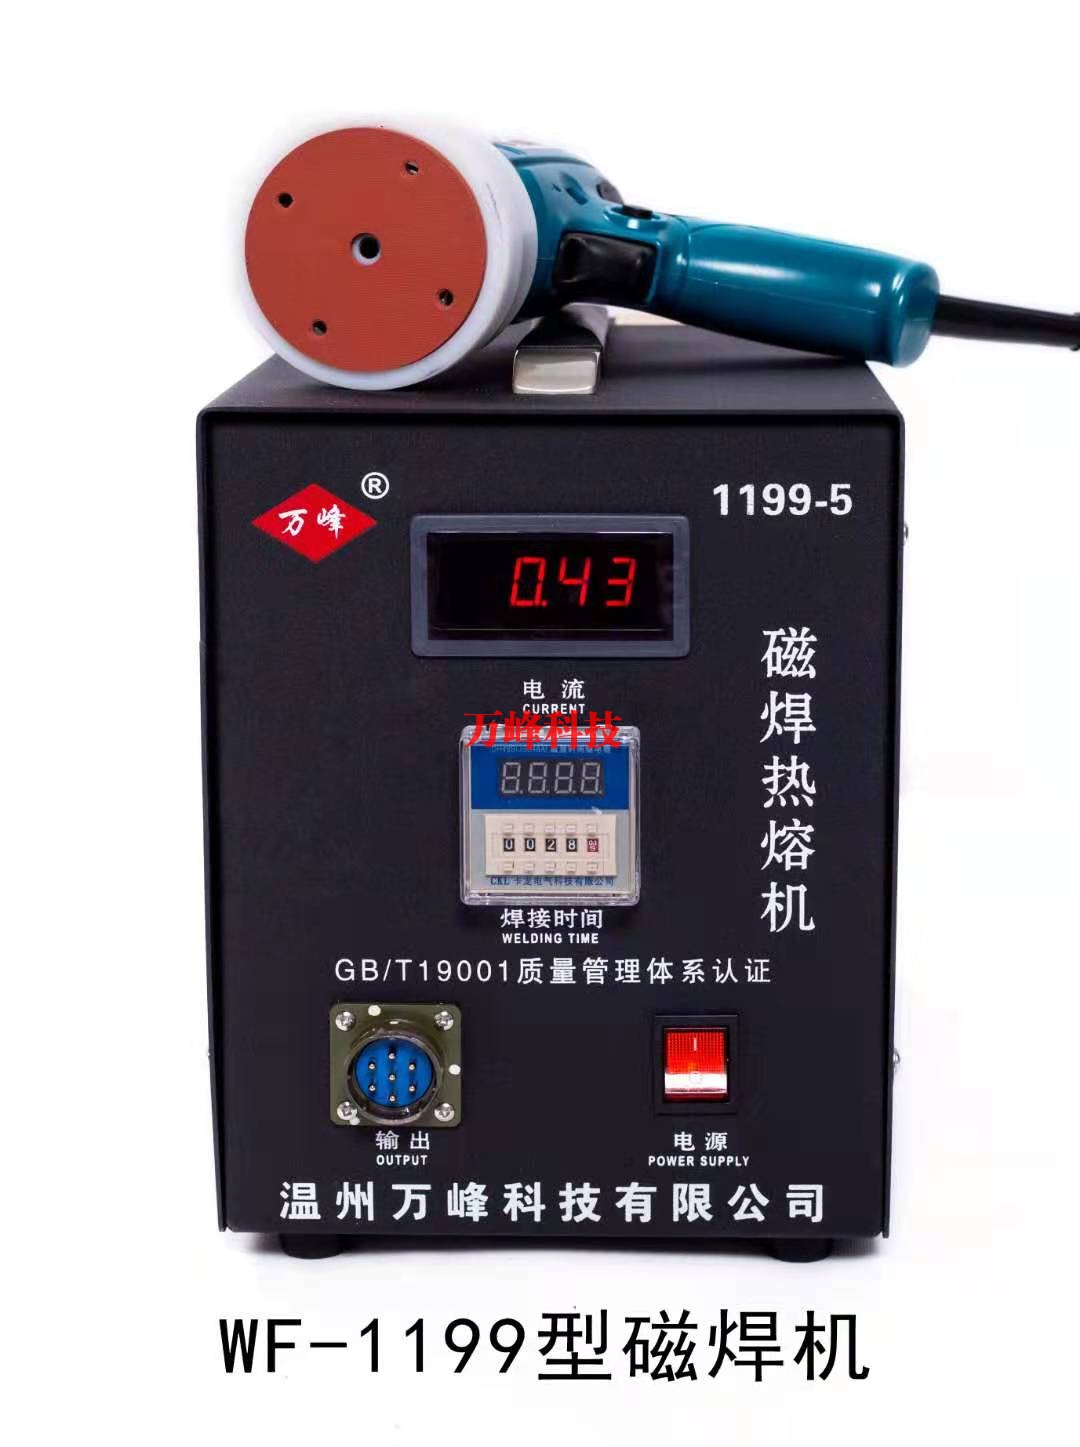 吴江WF-1199型磁焊热熔机